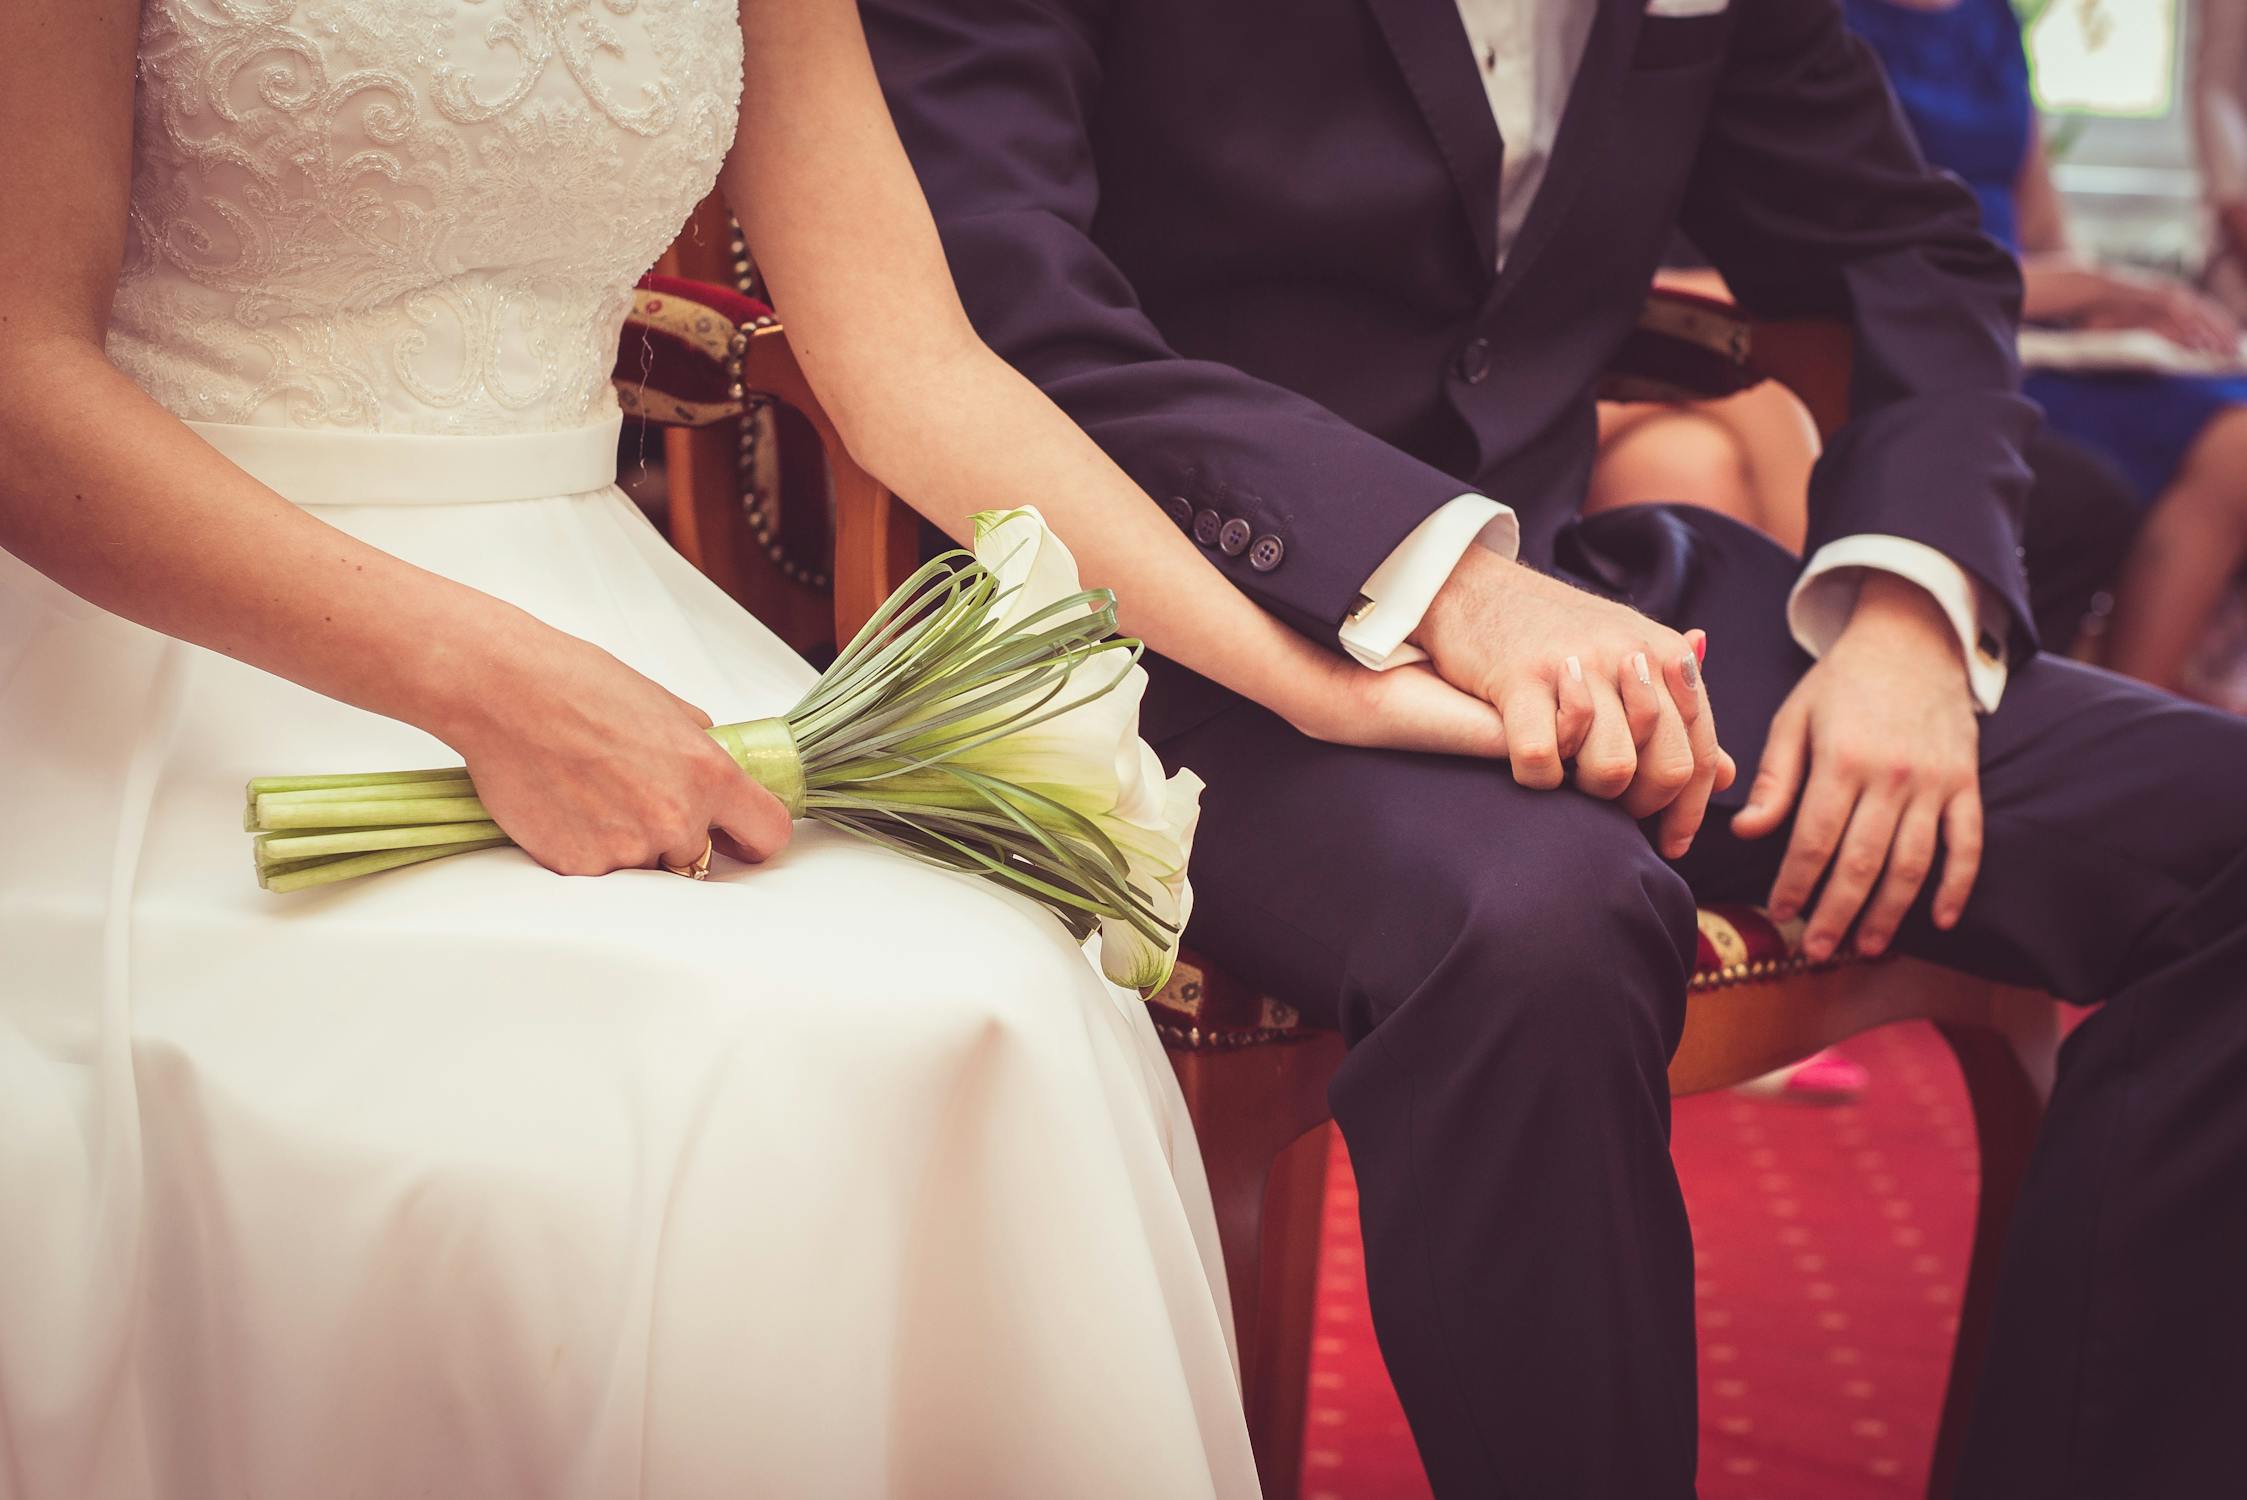 El matrimonio podría prevenir ataques al corazón: estudio